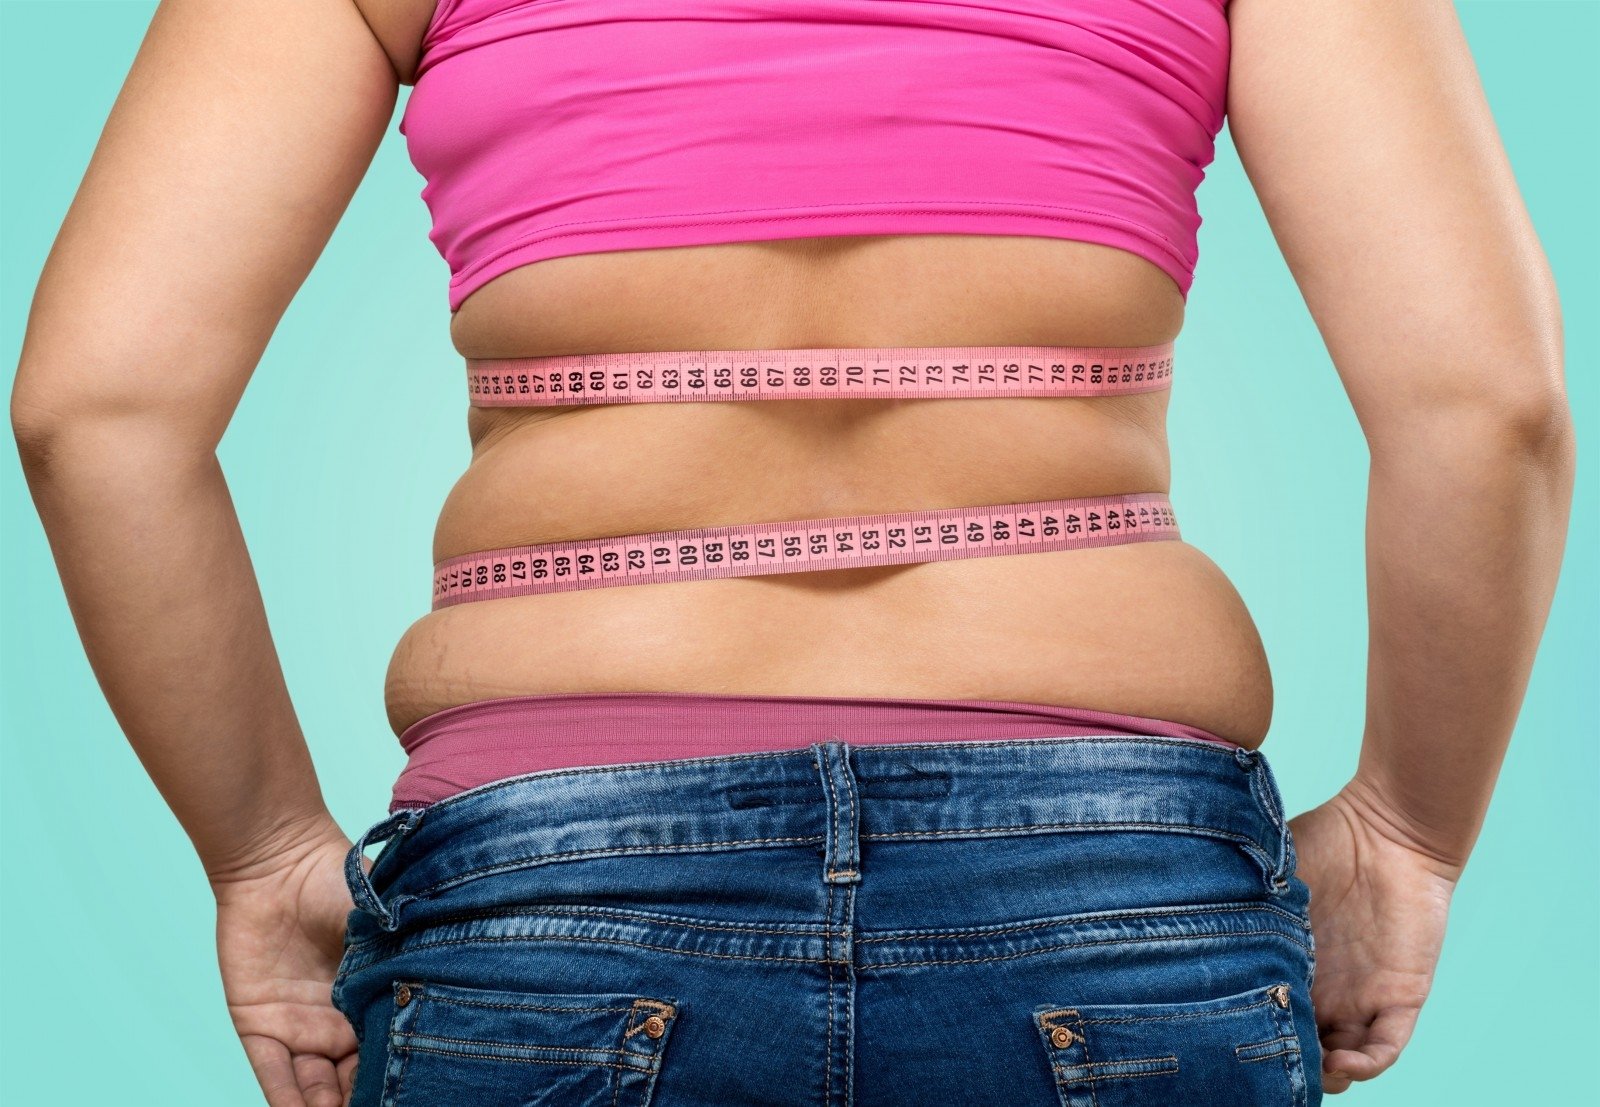 ar dėl fibromialgijos prarandate svorį kodėl sunku numesti pilvo riebalus